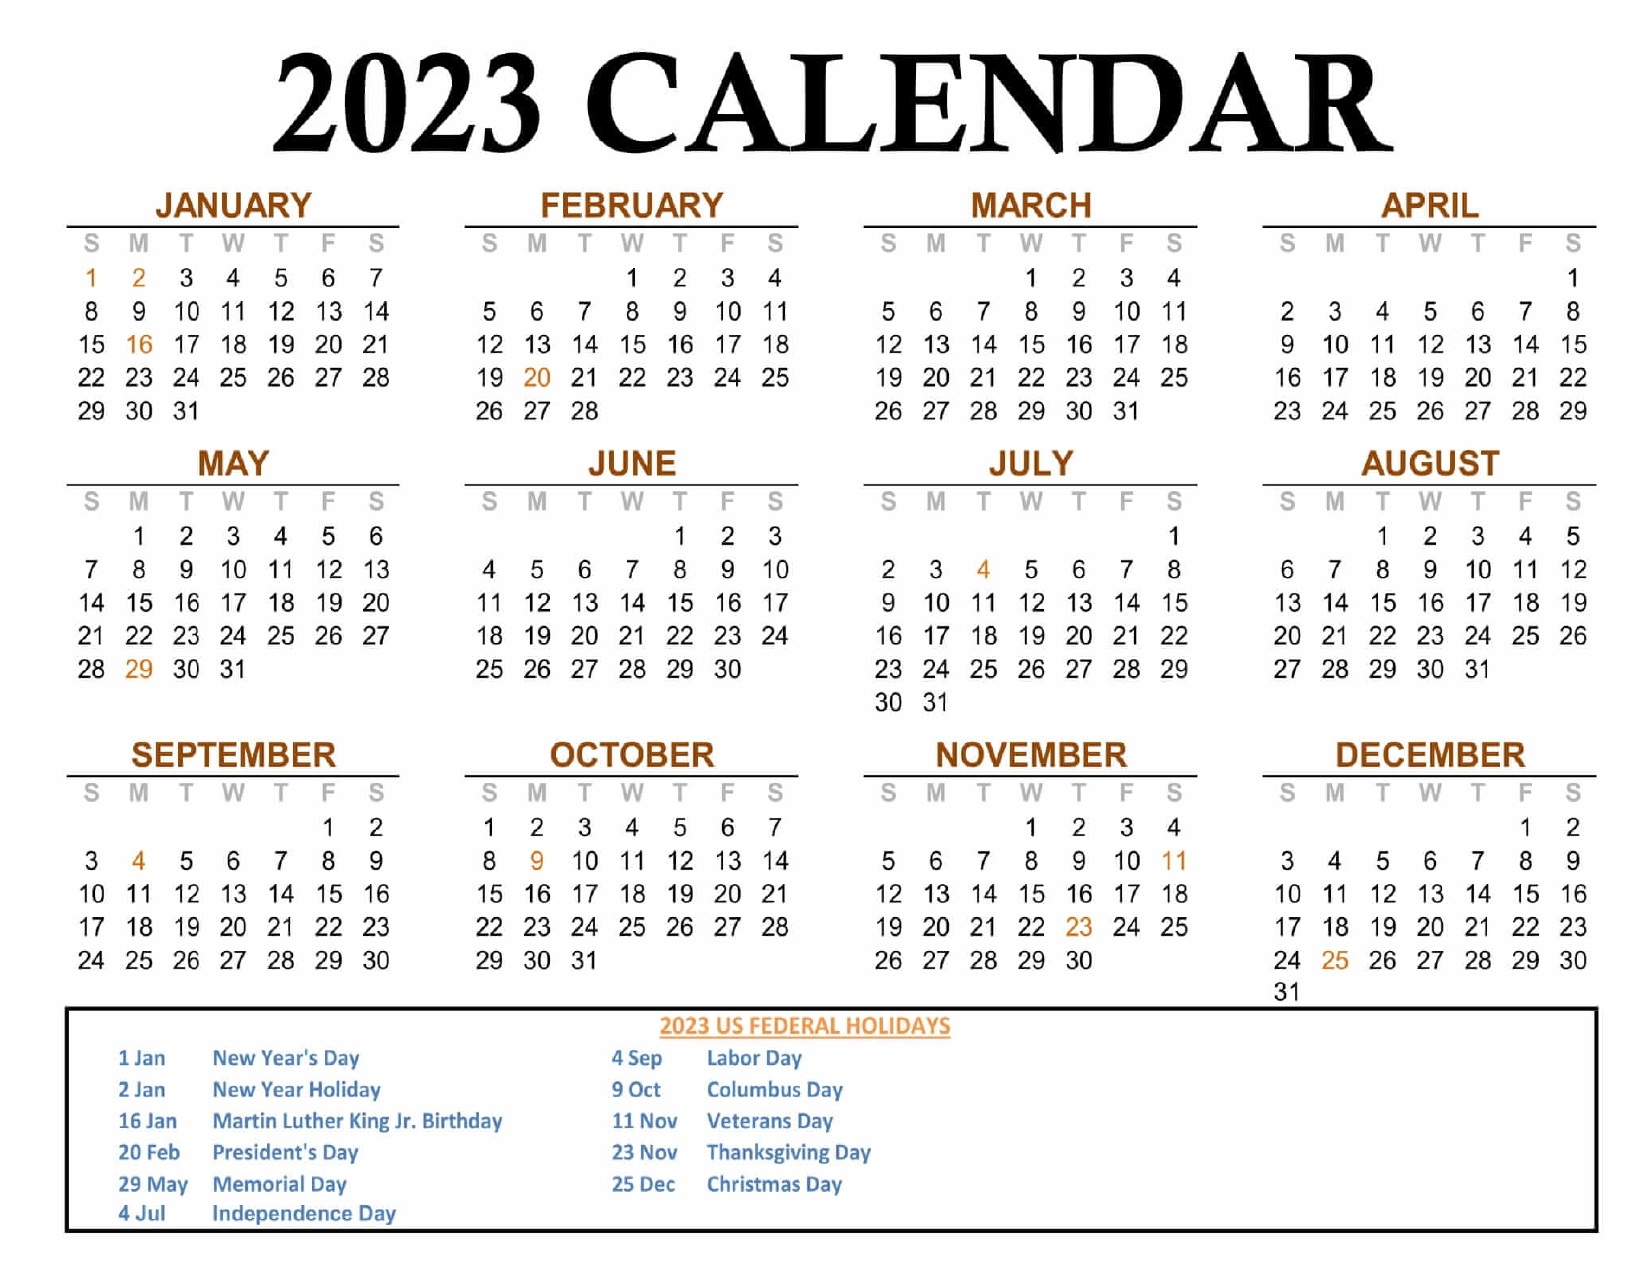 uconn calendar 2023